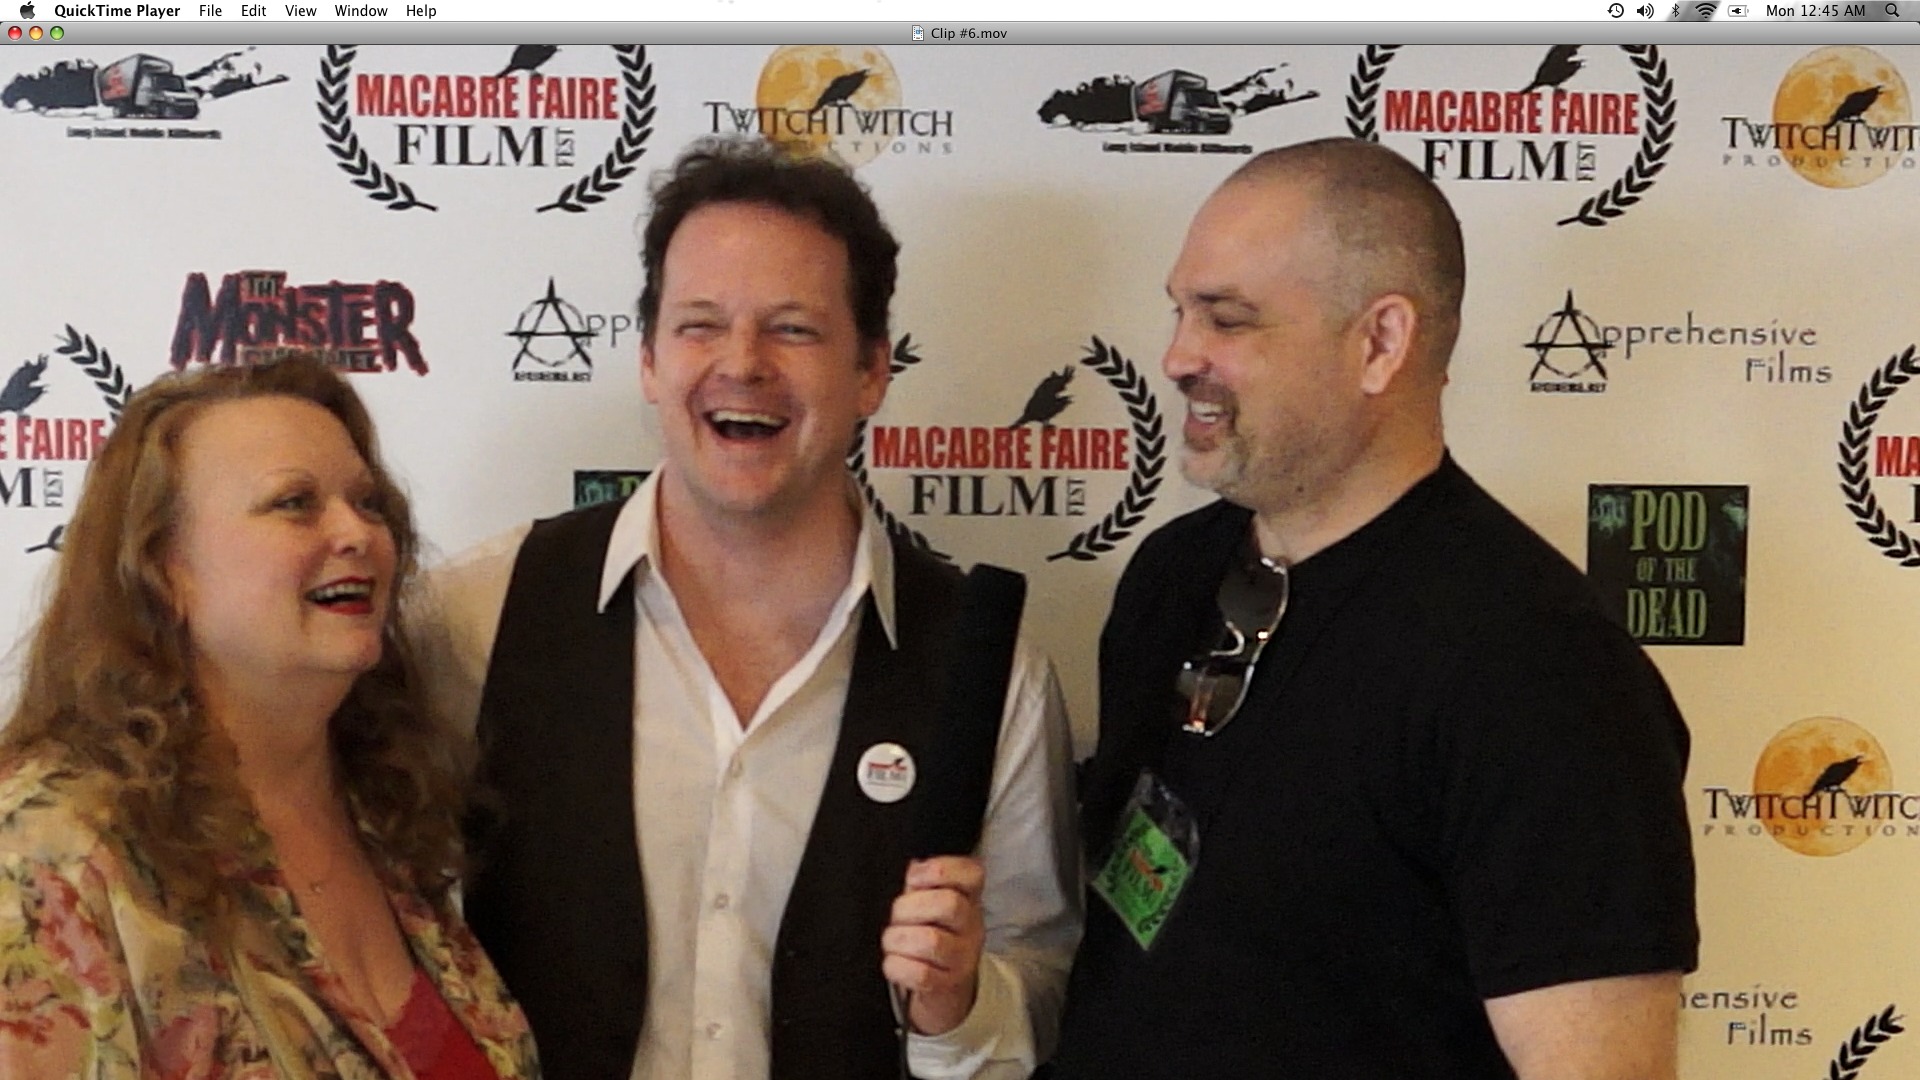 Linda S. Nelson, Michael Stever & Phil Fazzo at 3rd annual Macabre Faire Film Festival